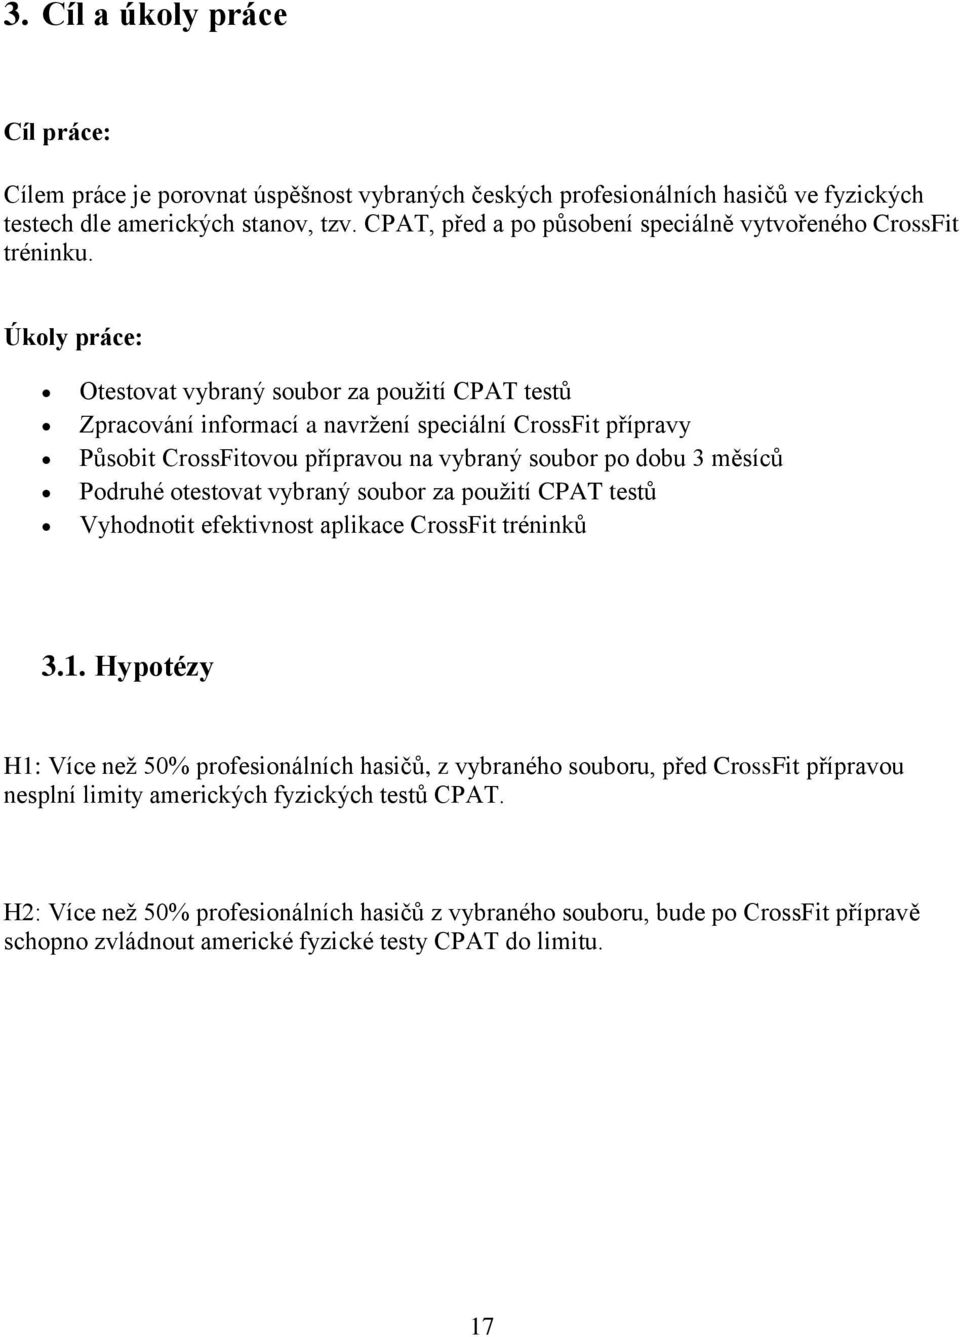 Úkoly práce: Otestovat vybraný soubor za použití CPAT testů Zpracování informací a navržení speciální CrossFit přípravy Působit CrossFitovou přípravou na vybraný soubor po dobu 3 měsíců Podruhé